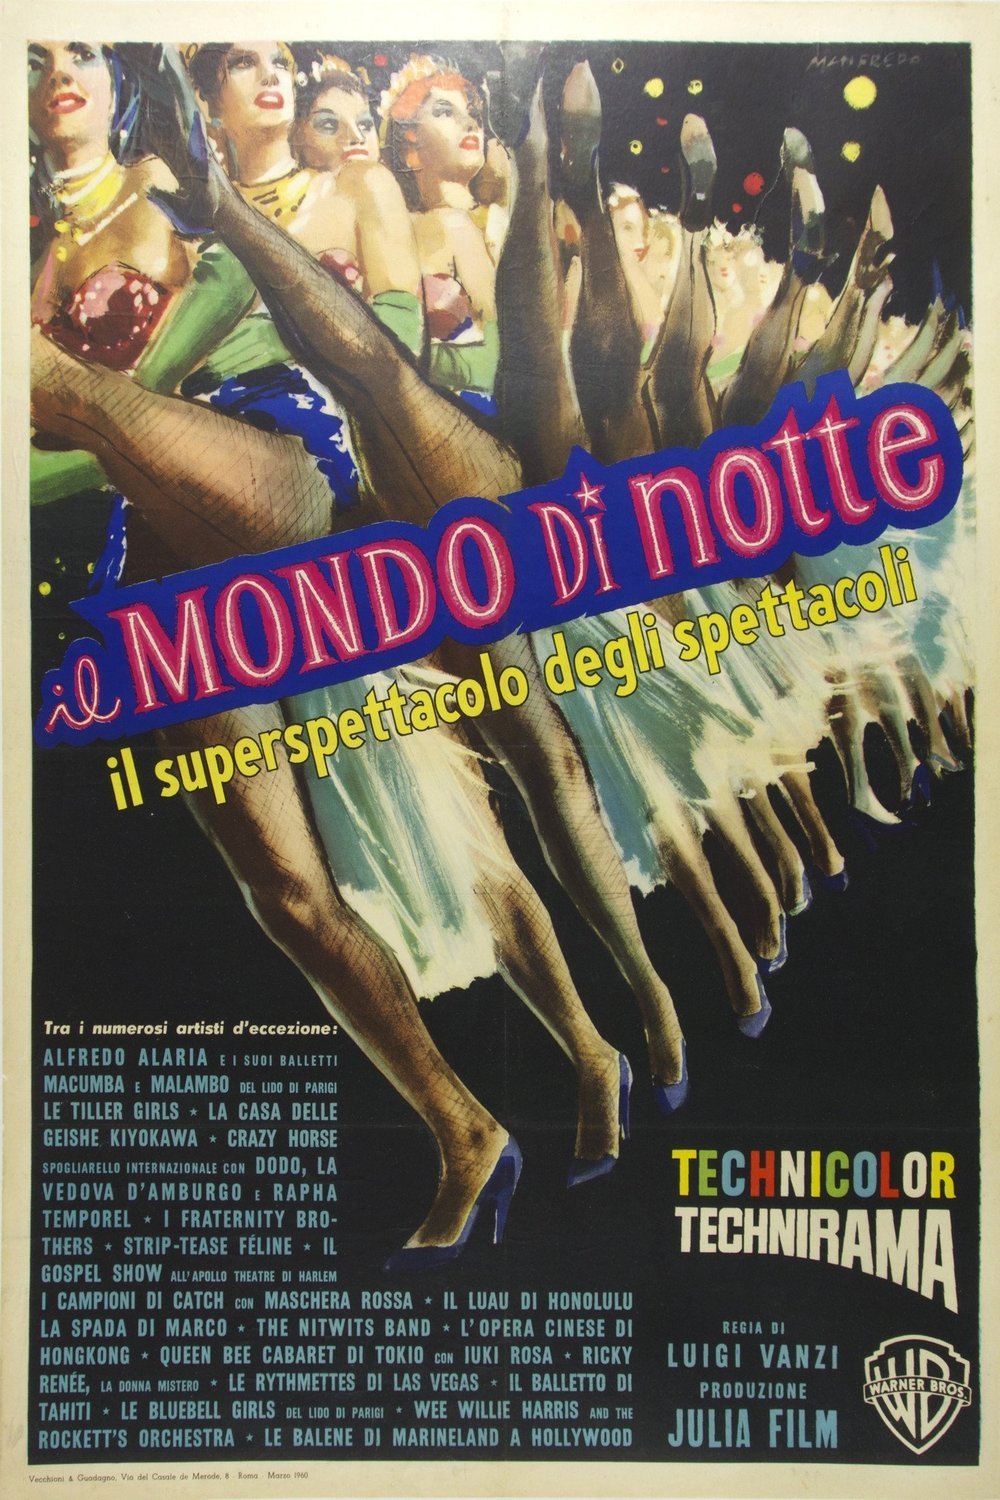 Italian poster of the movie Il mondo di notte